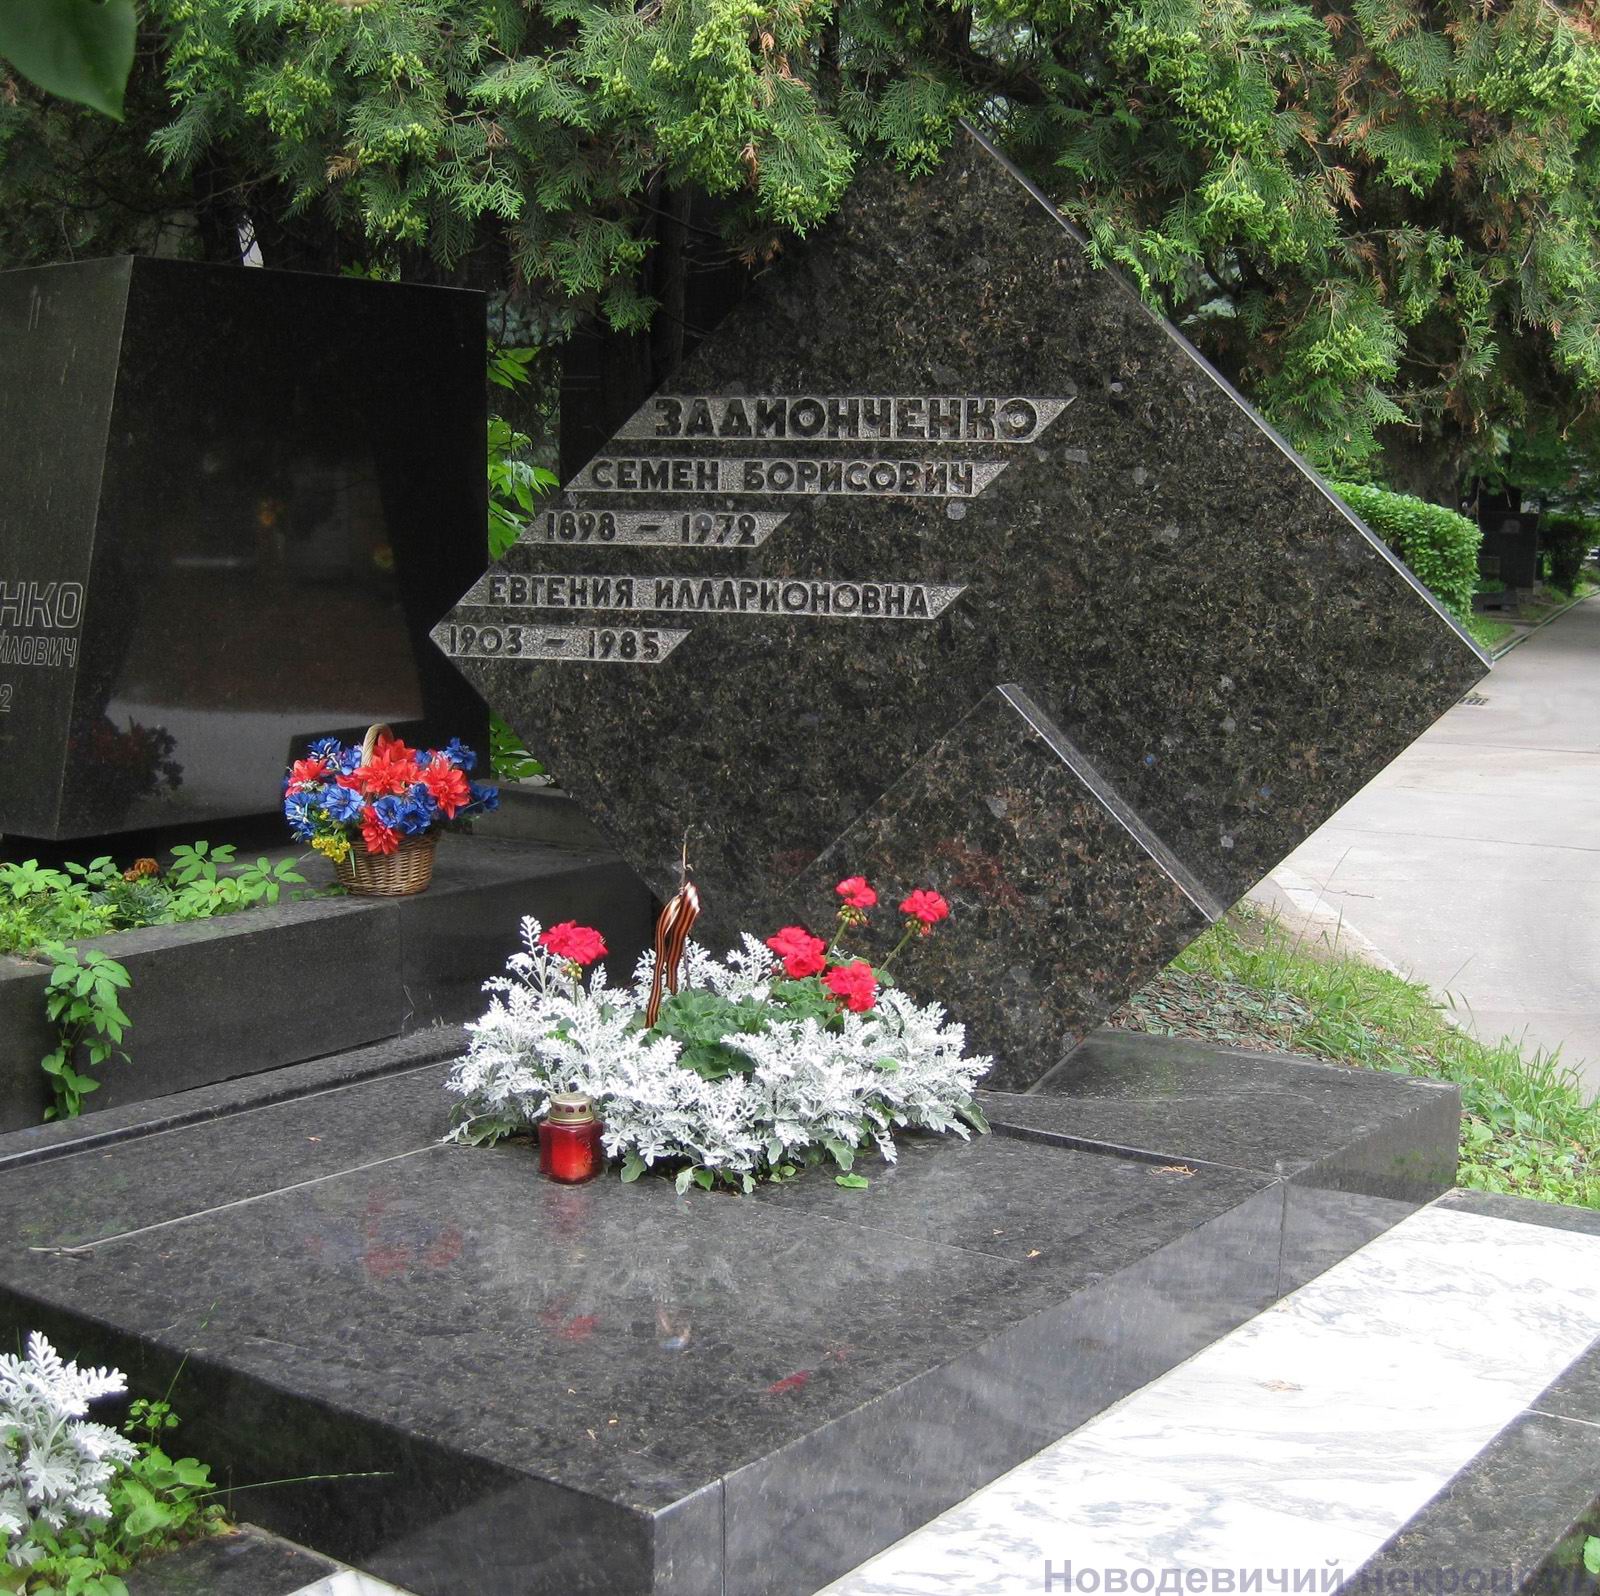 Памятник на могиле Задионченко С.Б. (1898-1972), арх. А.Арапов, на Новодевичьем кладбище (7-2-26).